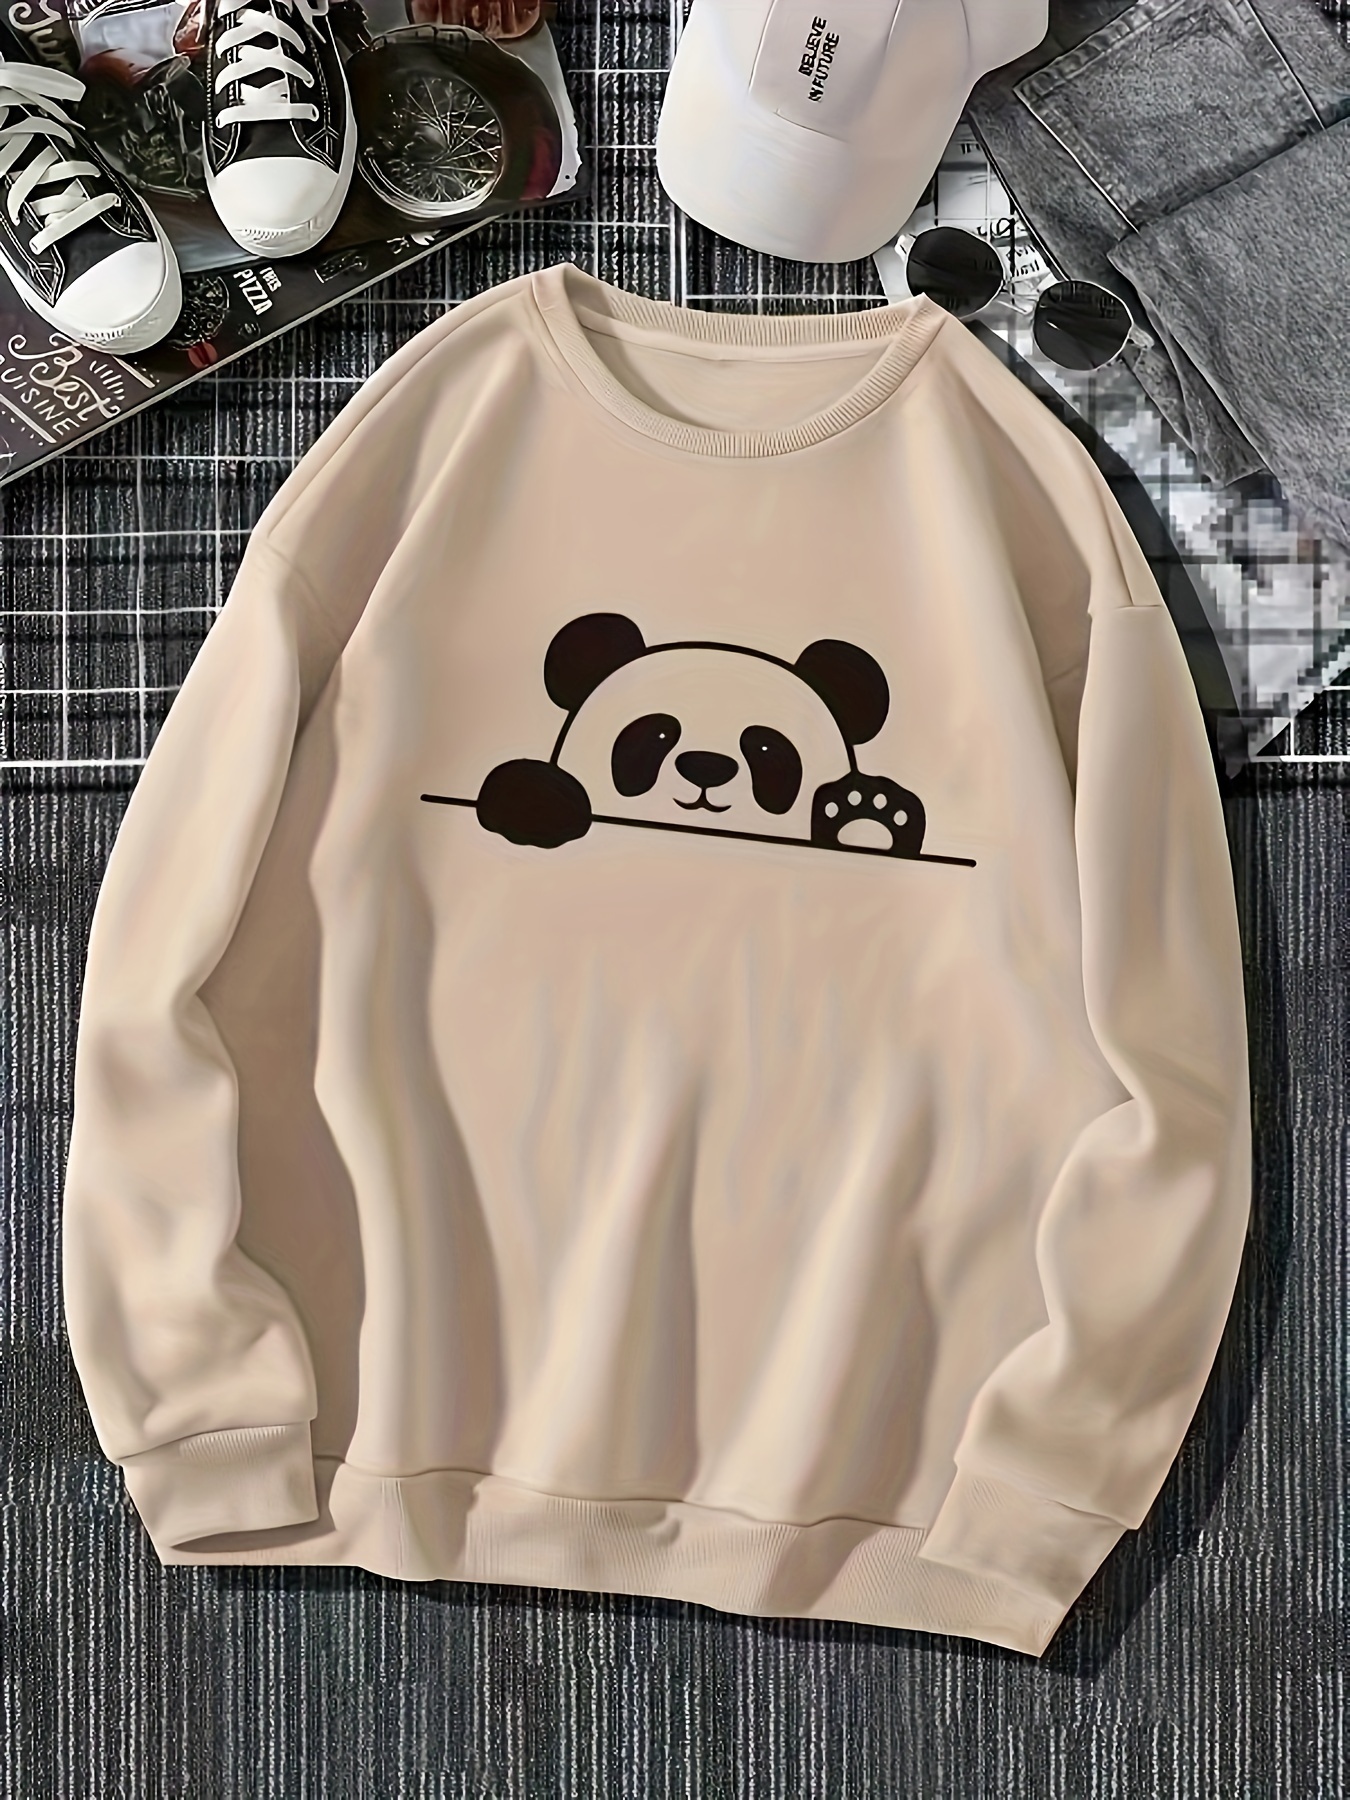 Panda Sweatshirt - Kostenlose Rückgabe Innerhalb Von 90 Tagen